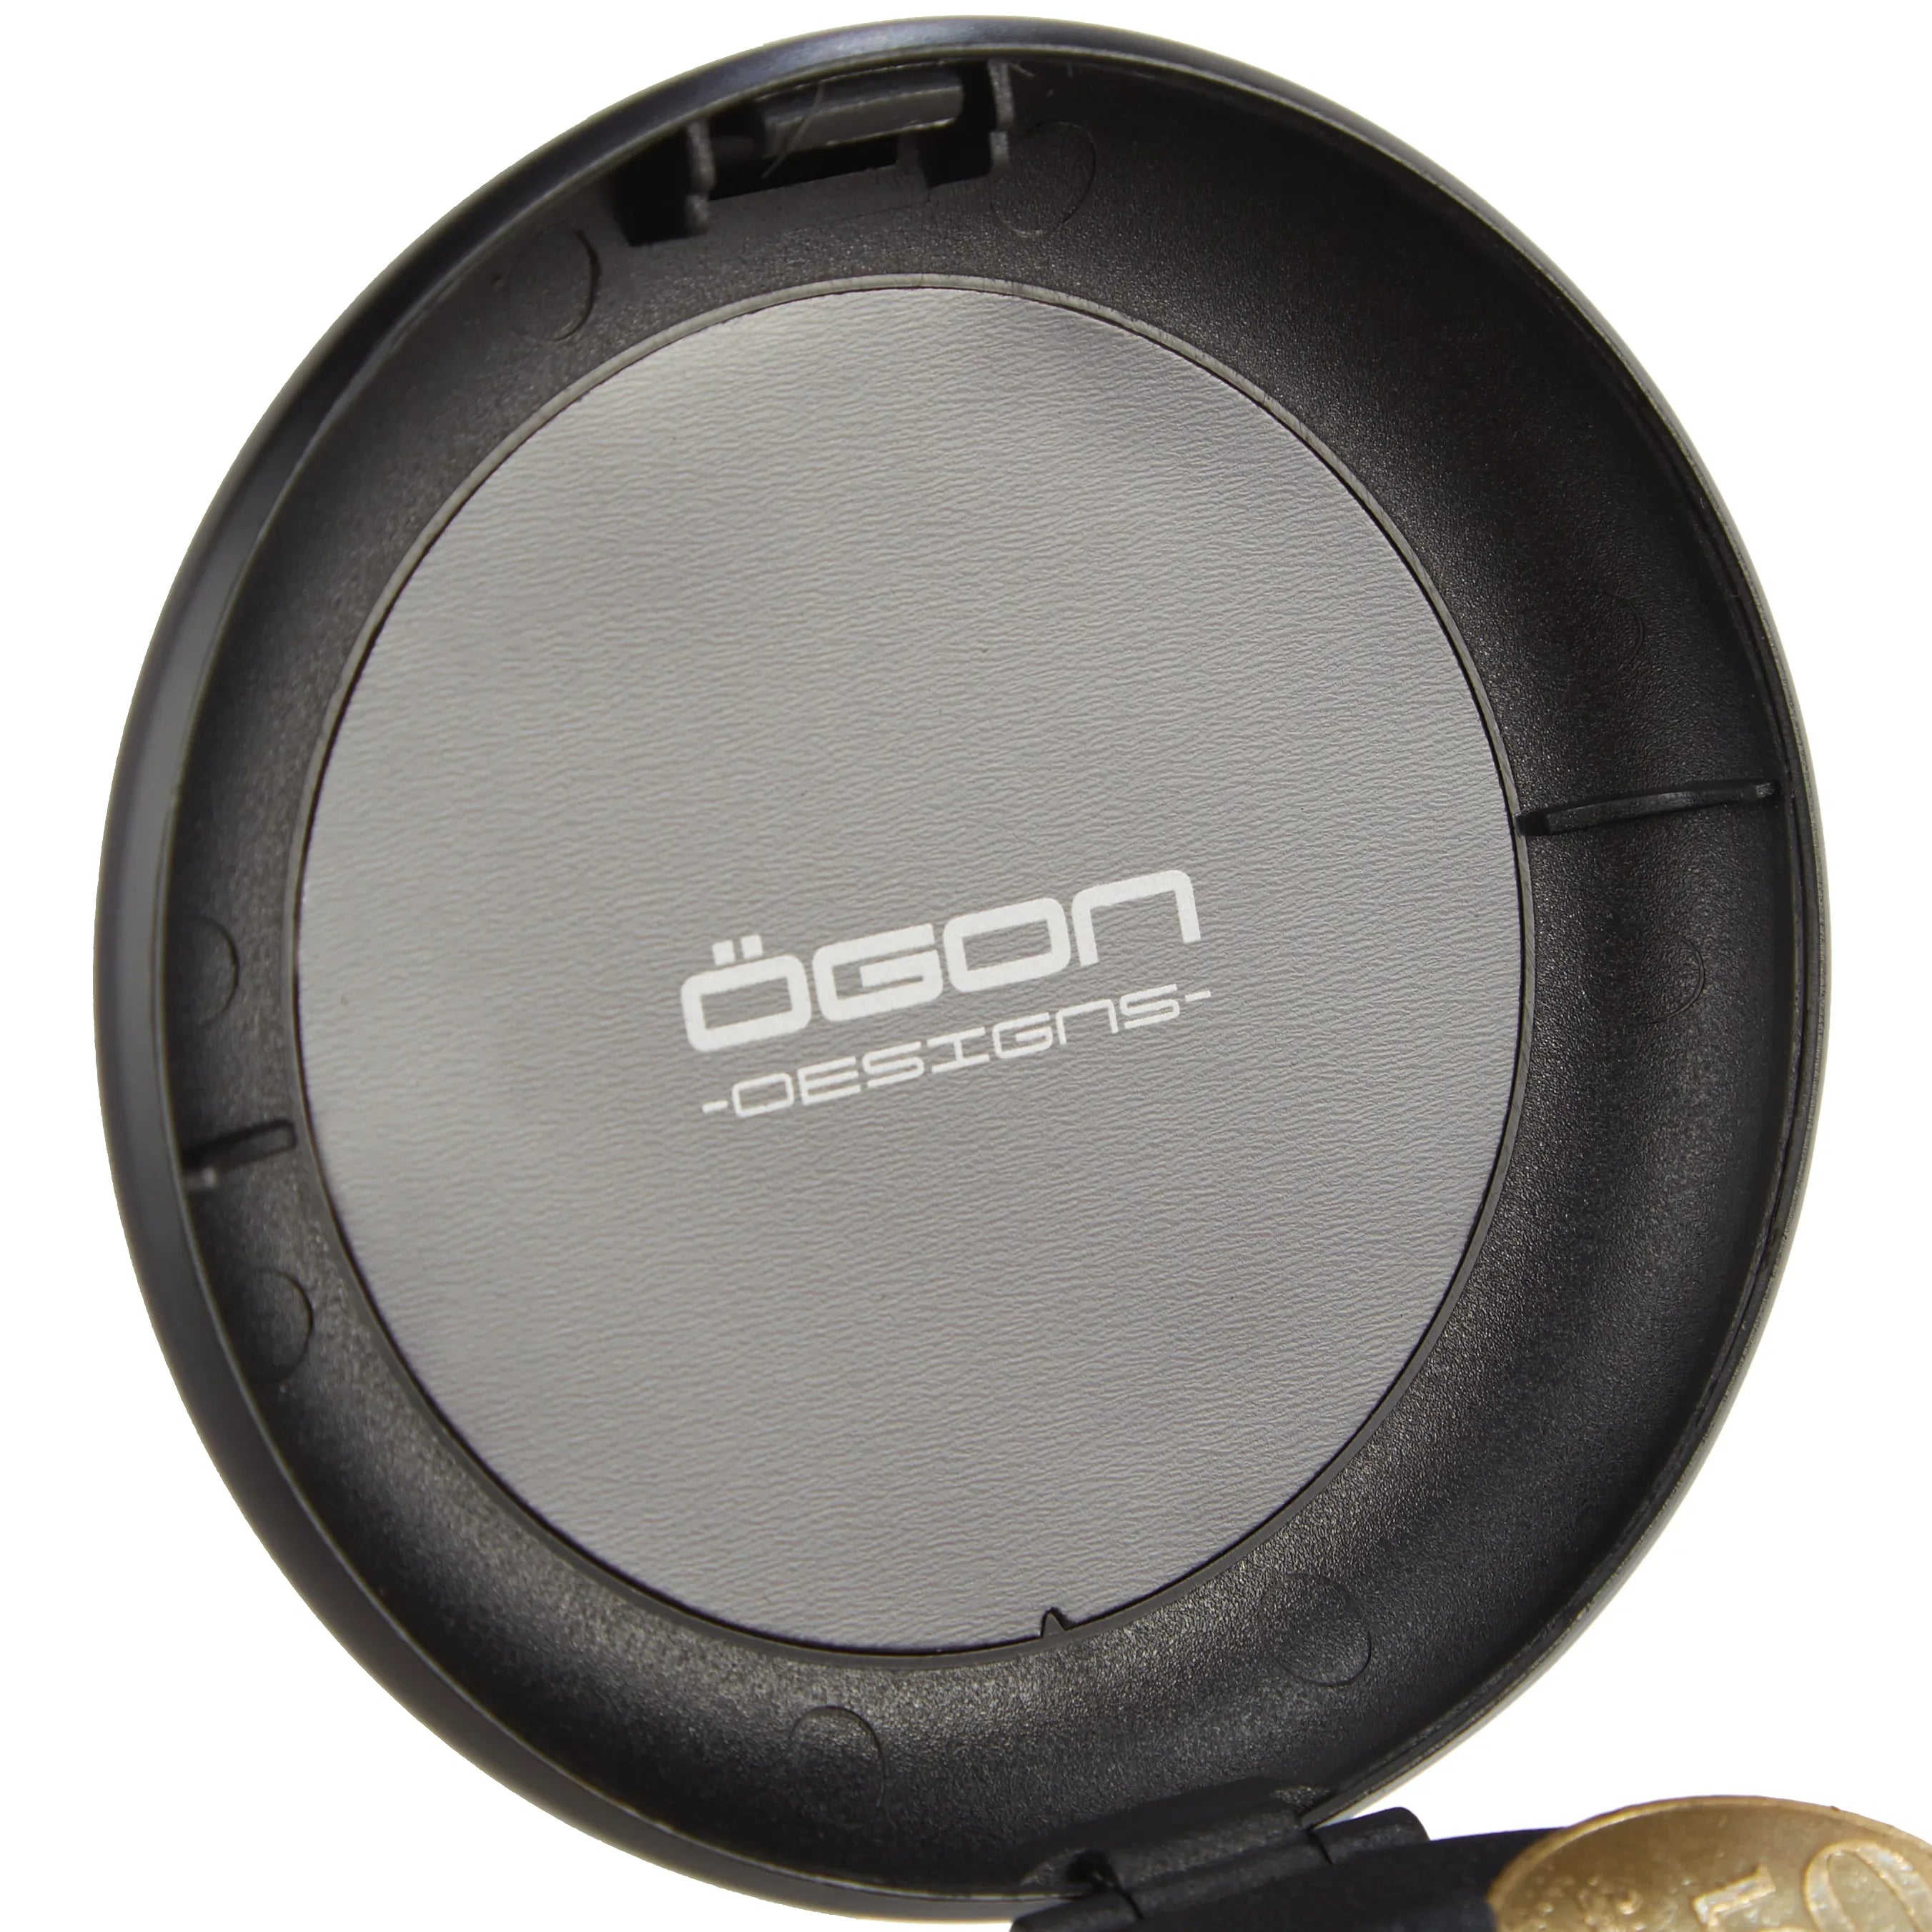 Ögon Designs Wallets Innovations Coin Dispenser 8 cm - black